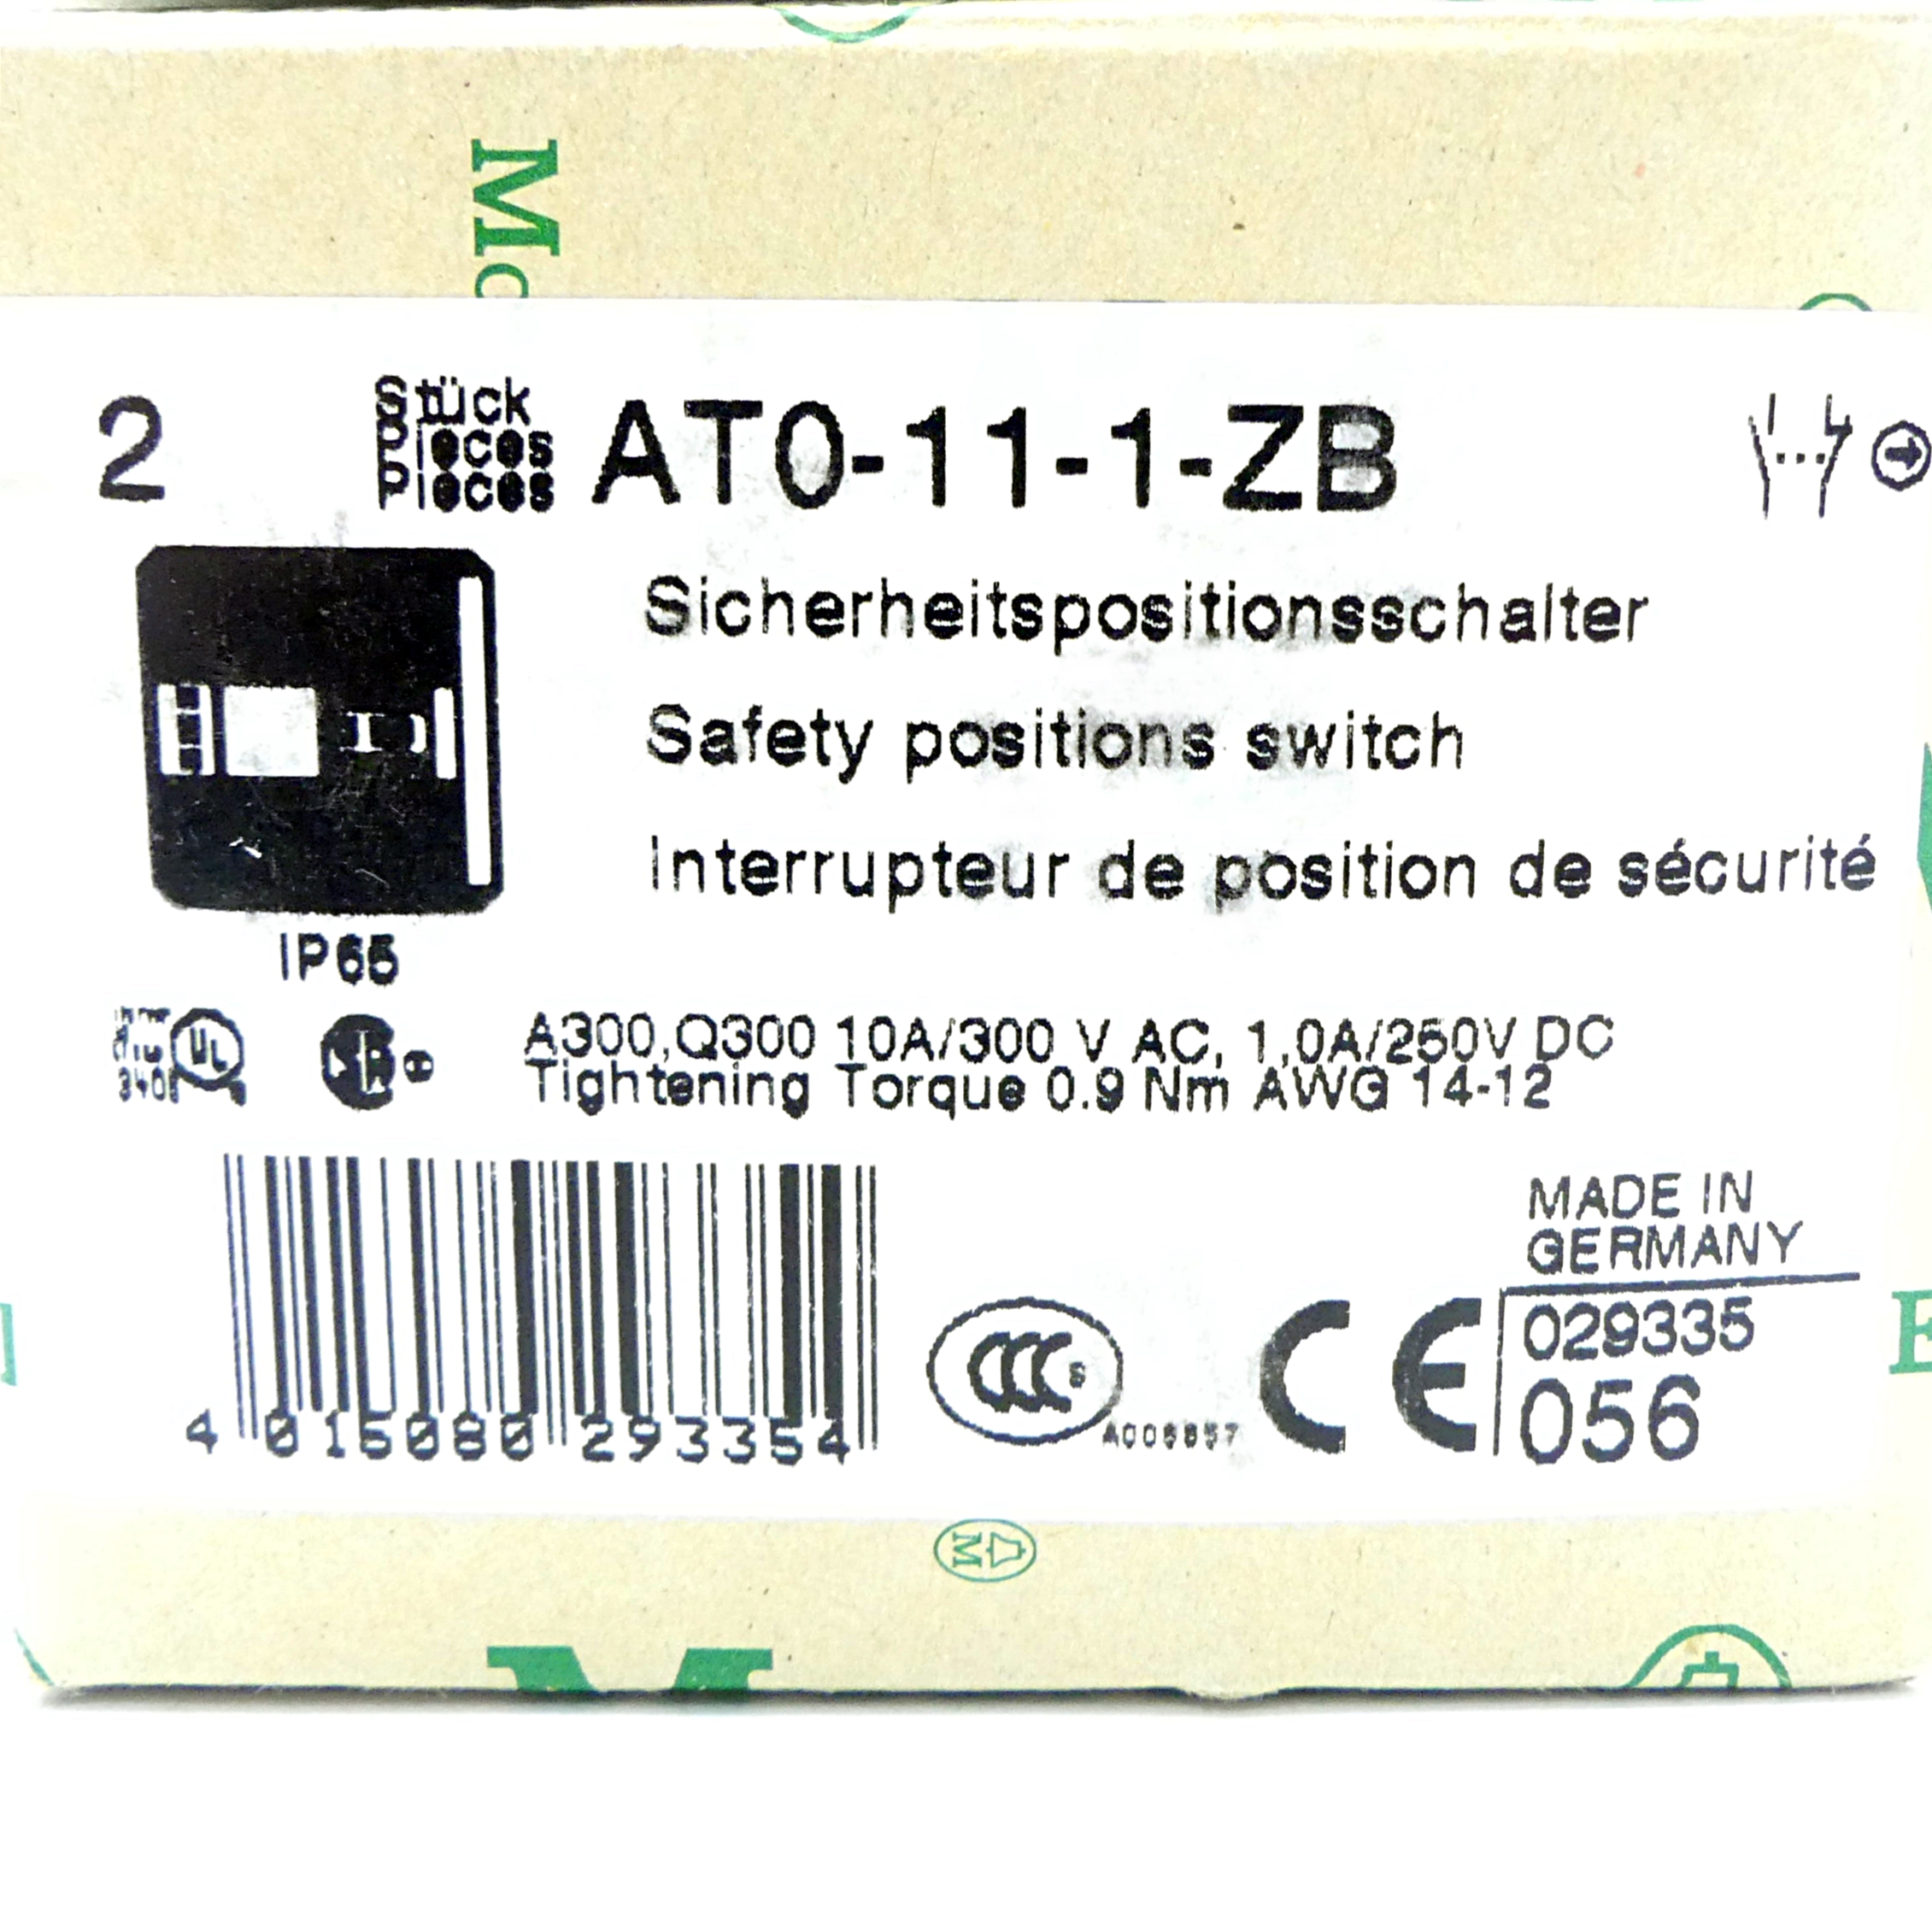 2 Stück Sicherheitspositionsschalter ATO-11-1-ZB 